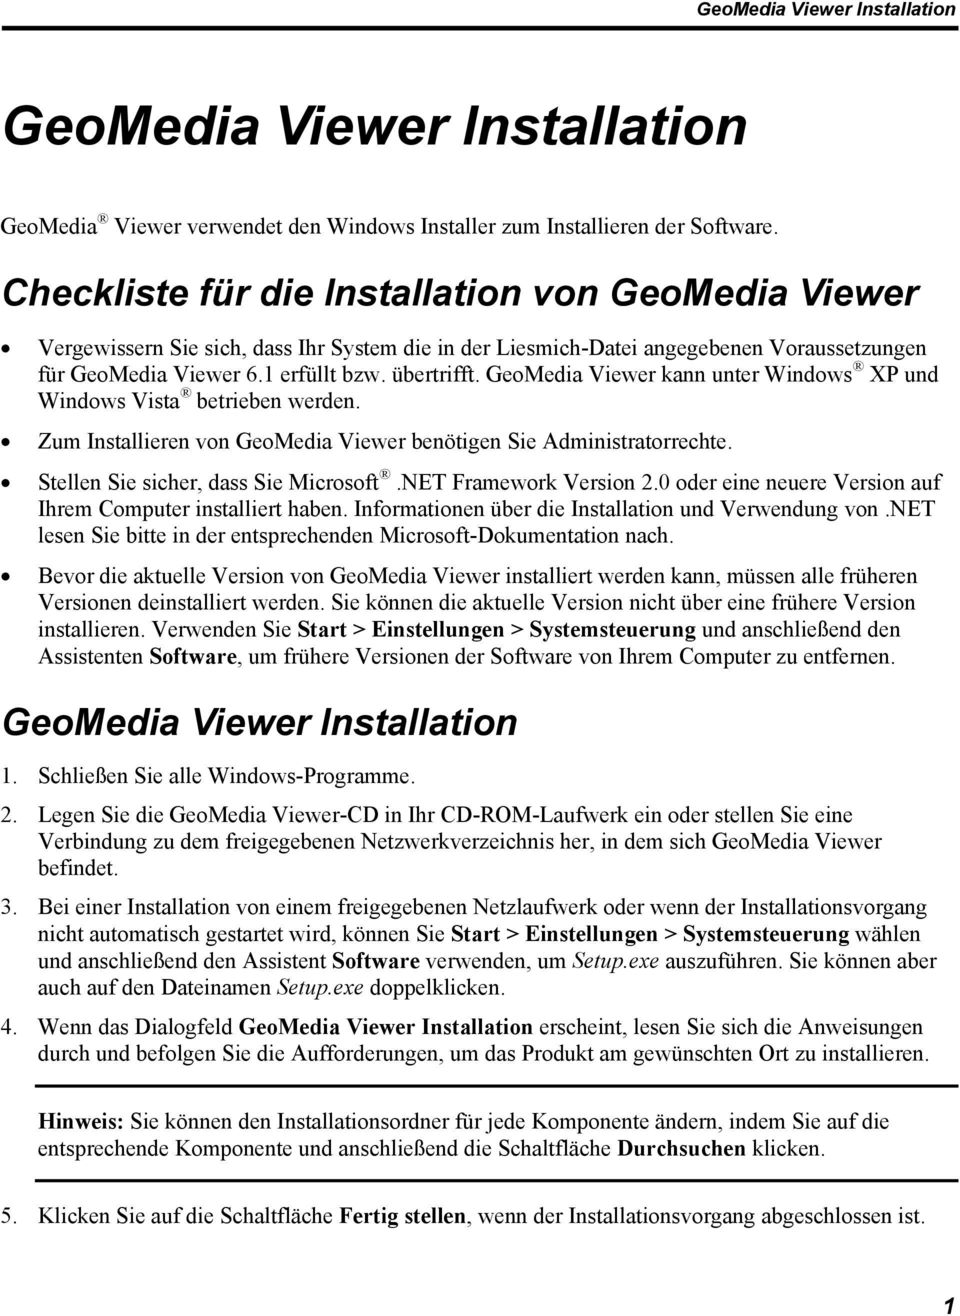 GeoMedia Viewer kann unter Windows XP und Windows Vista betrieben werden. Zum Installieren von GeoMedia Viewer benötigen Sie Administratorrechte. Stellen Sie sicher, dass Sie Microsoft.